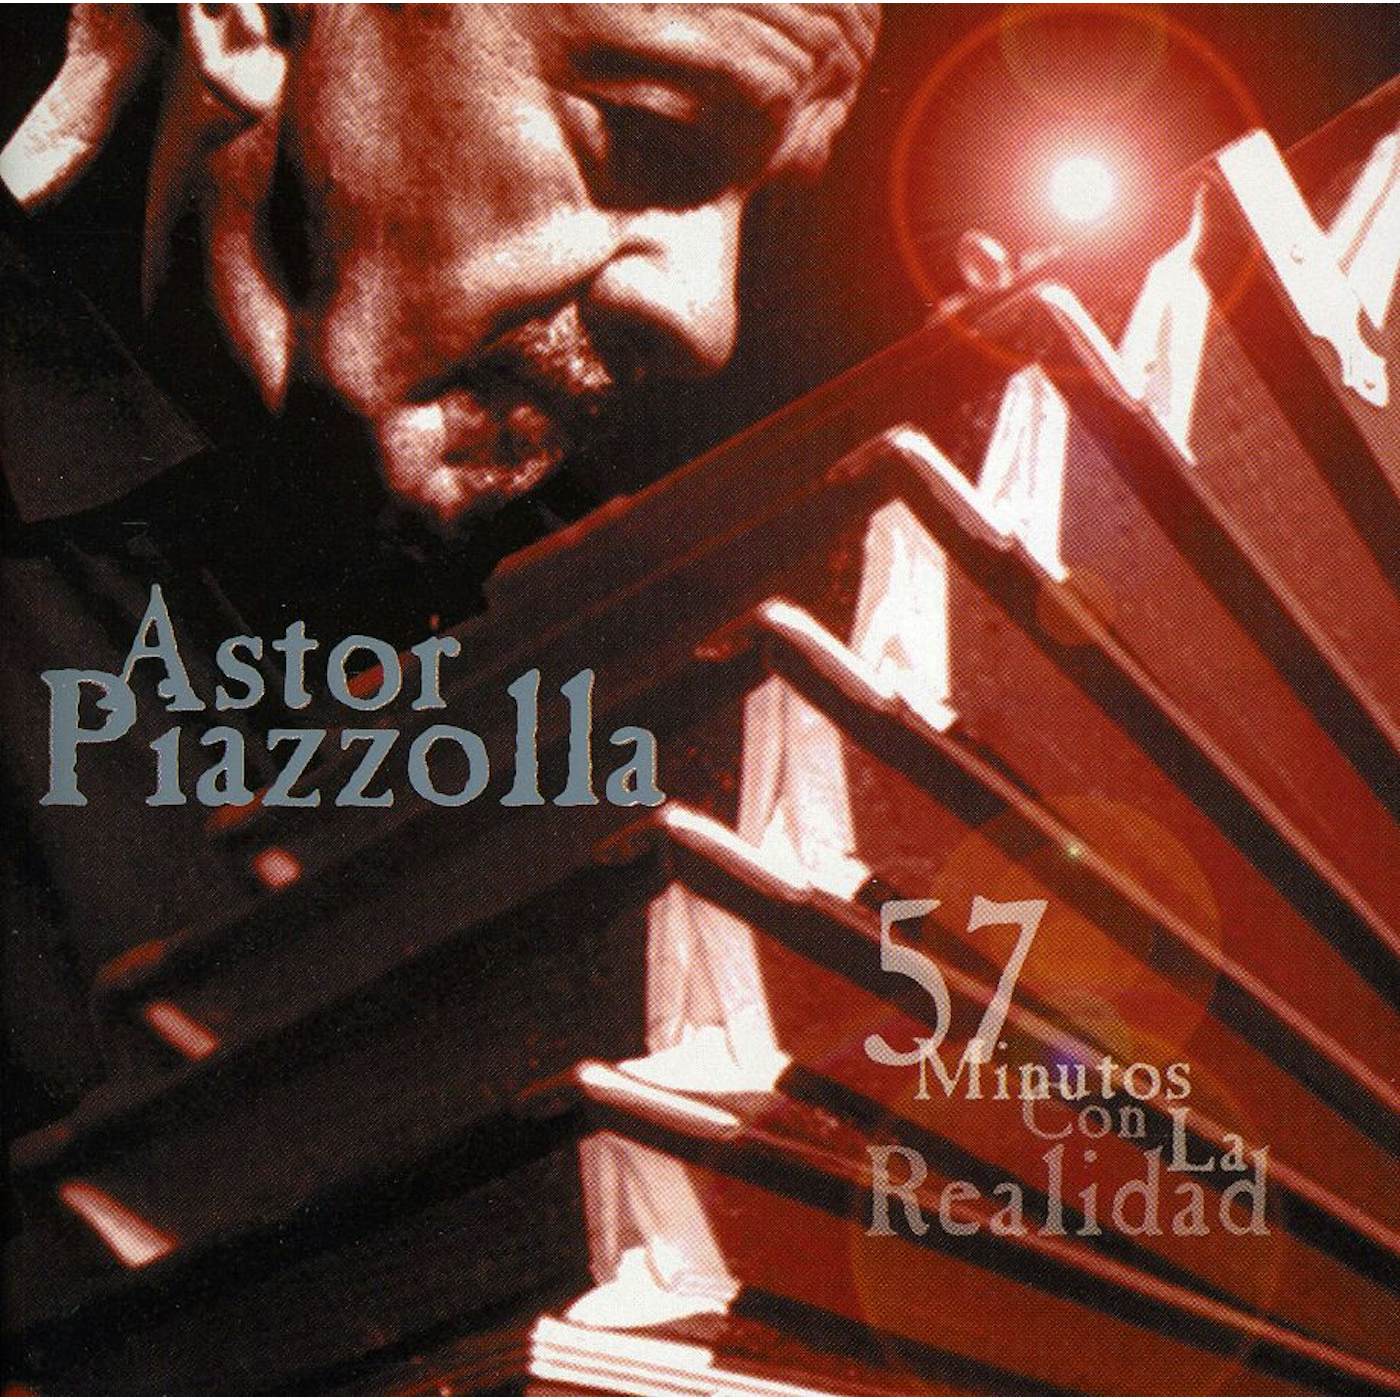 Astor Piazzolla 57 MINUTOS CON LA REALIDAD CD